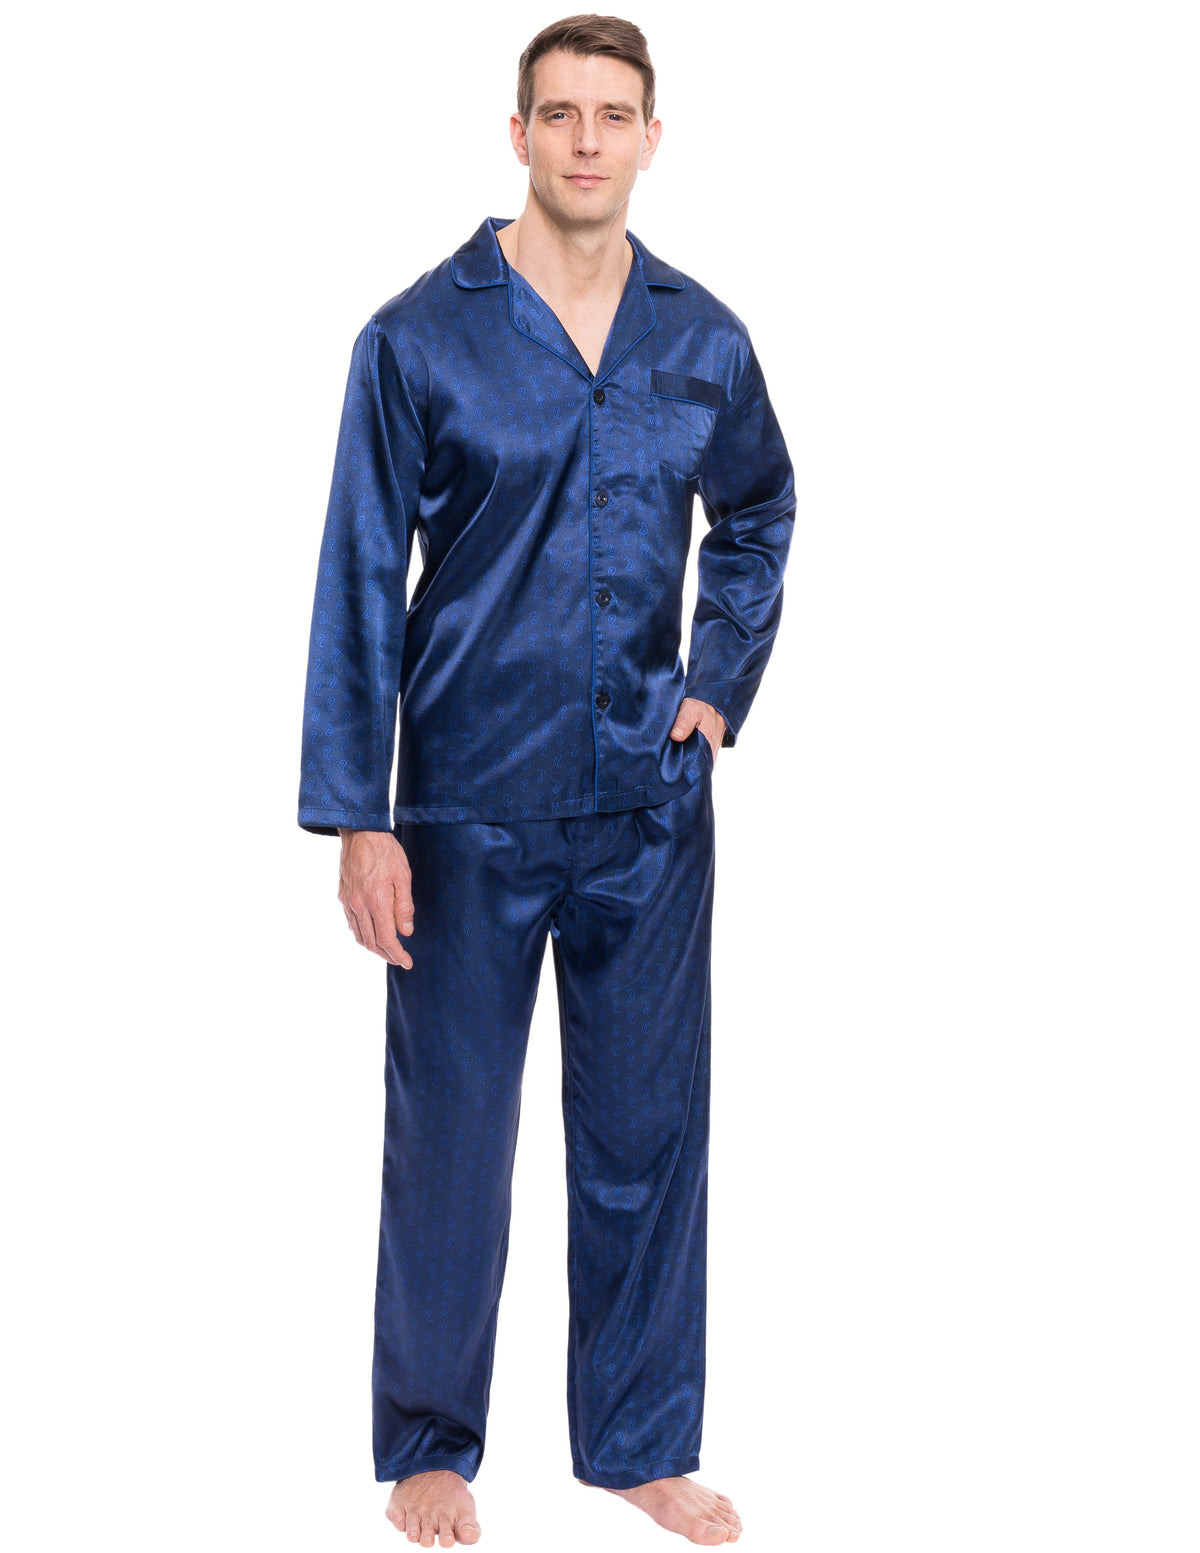 Mens Satin Sleepwear/Pajama Set - Paisley Blue